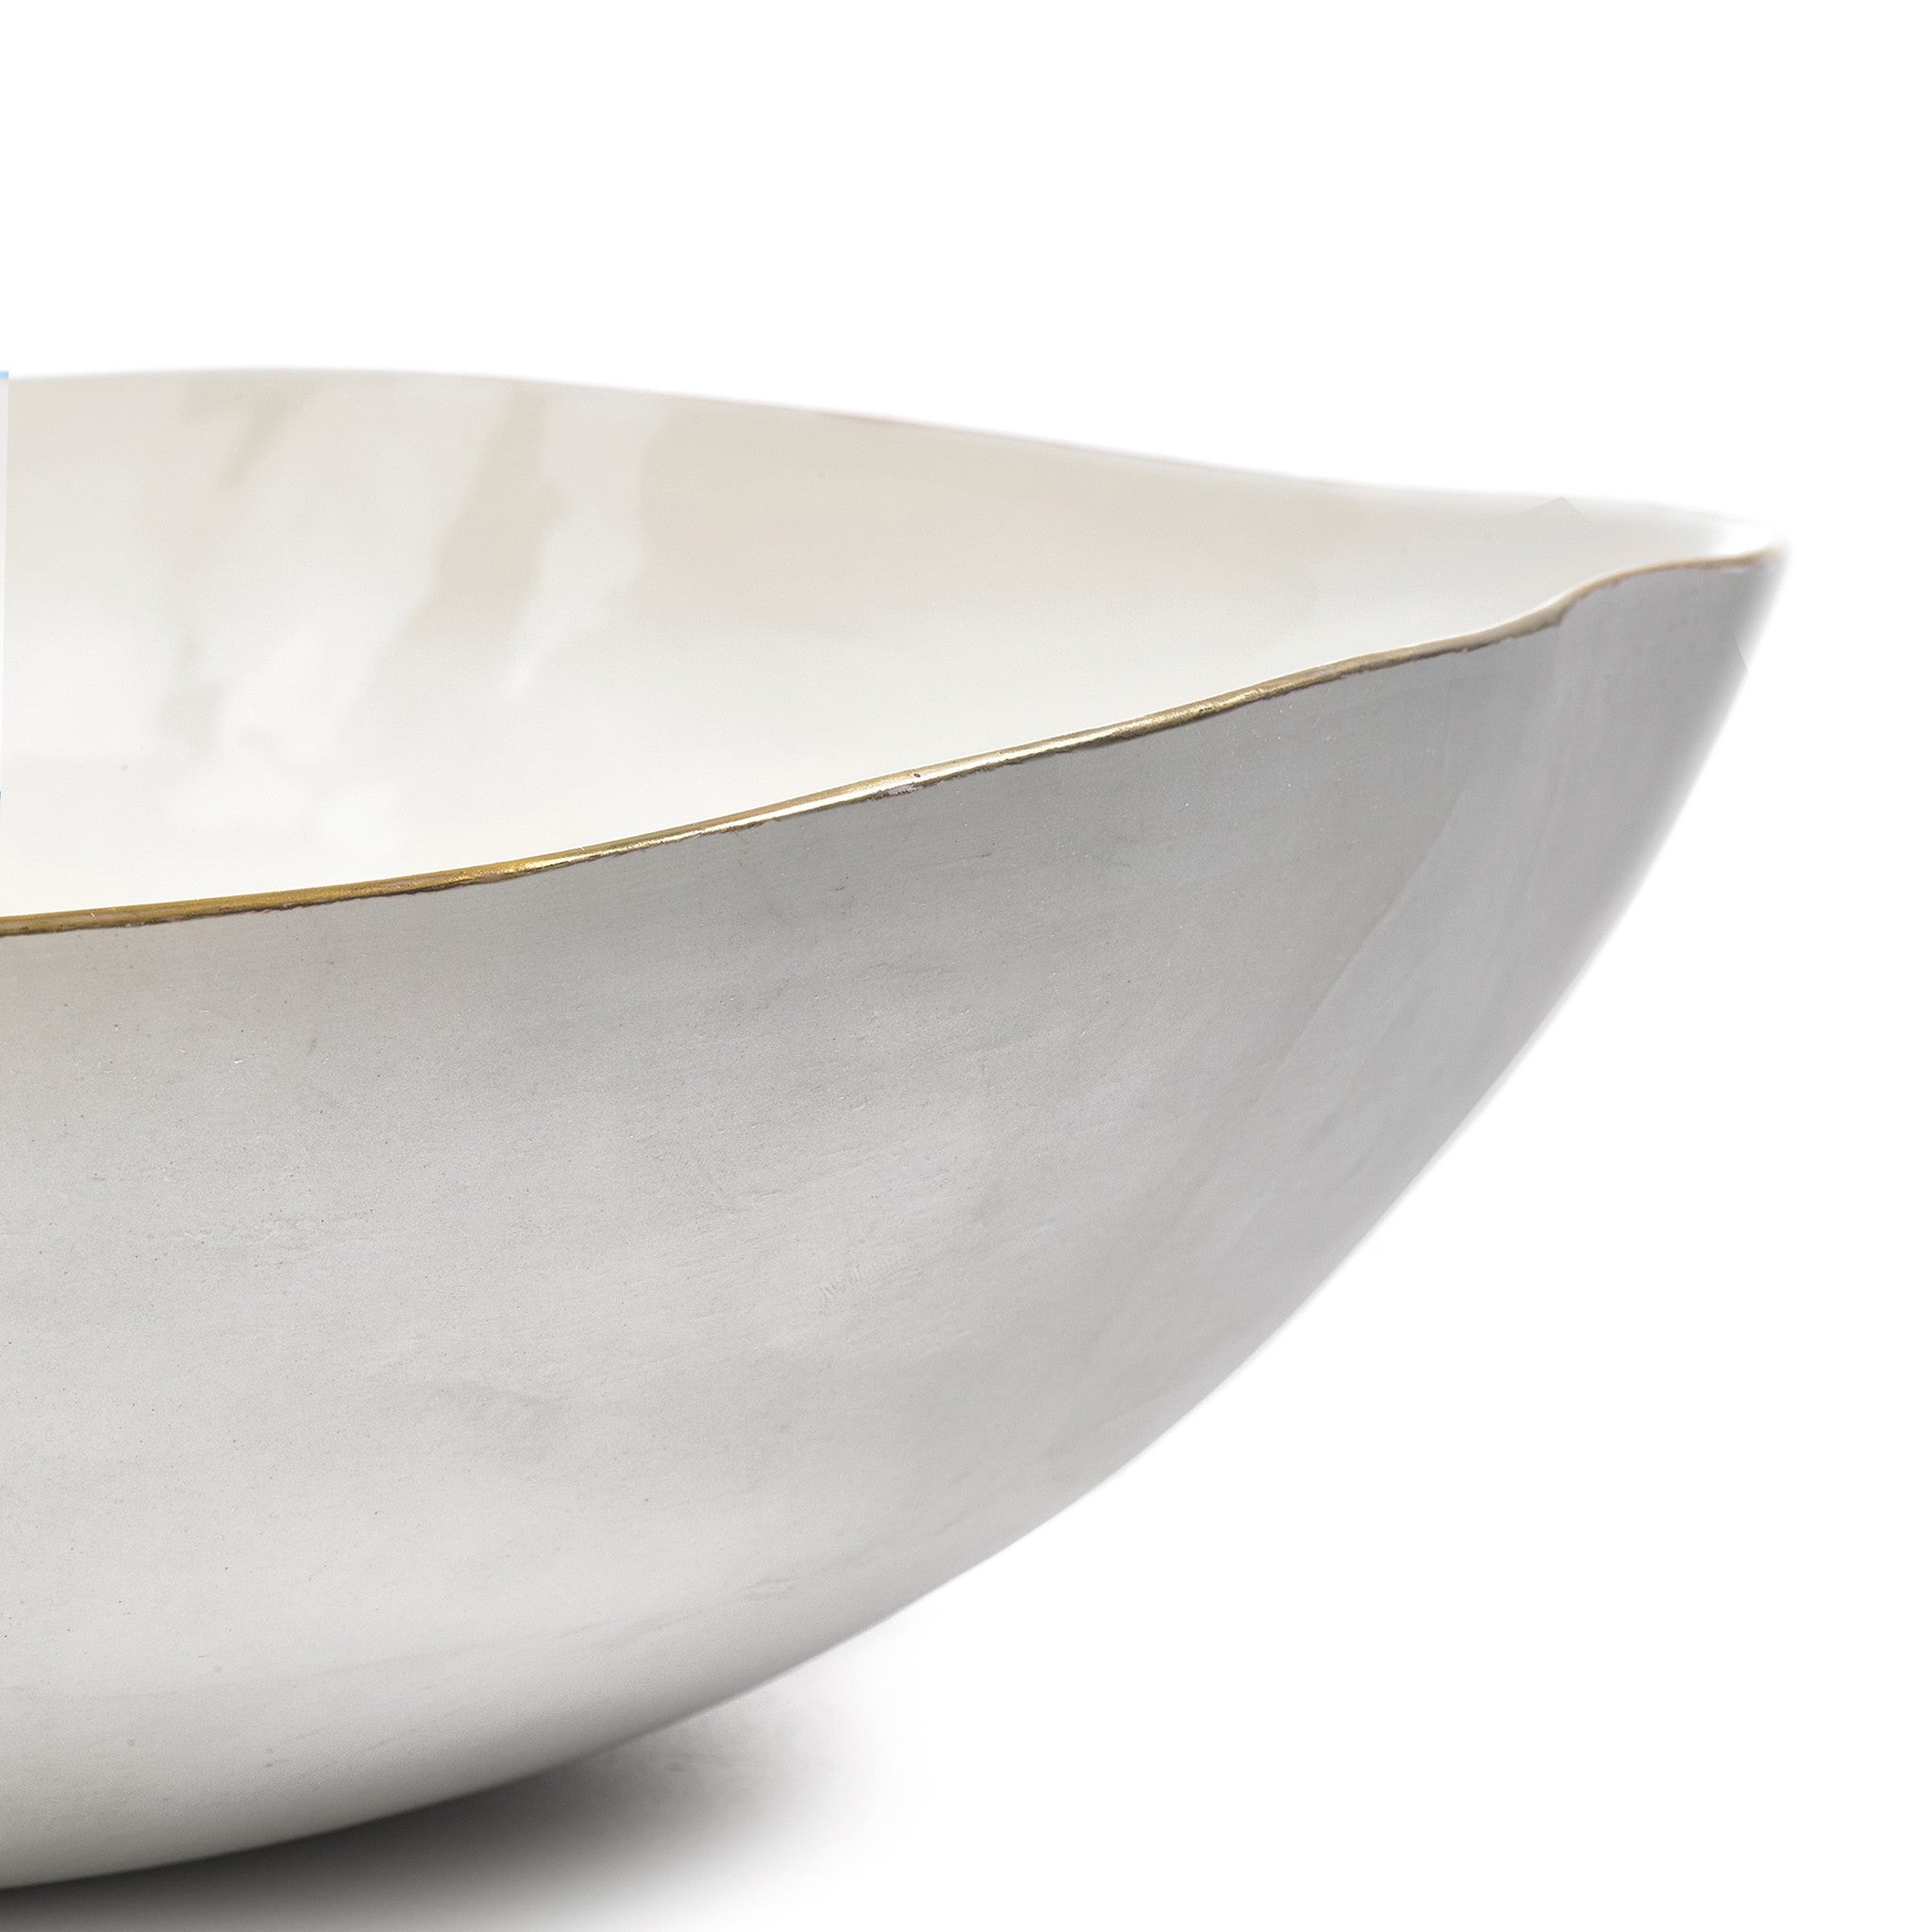 Summerill & Bishop Handmade 43cm Porcelain Extra Large Salad Bowl with Gold Rim